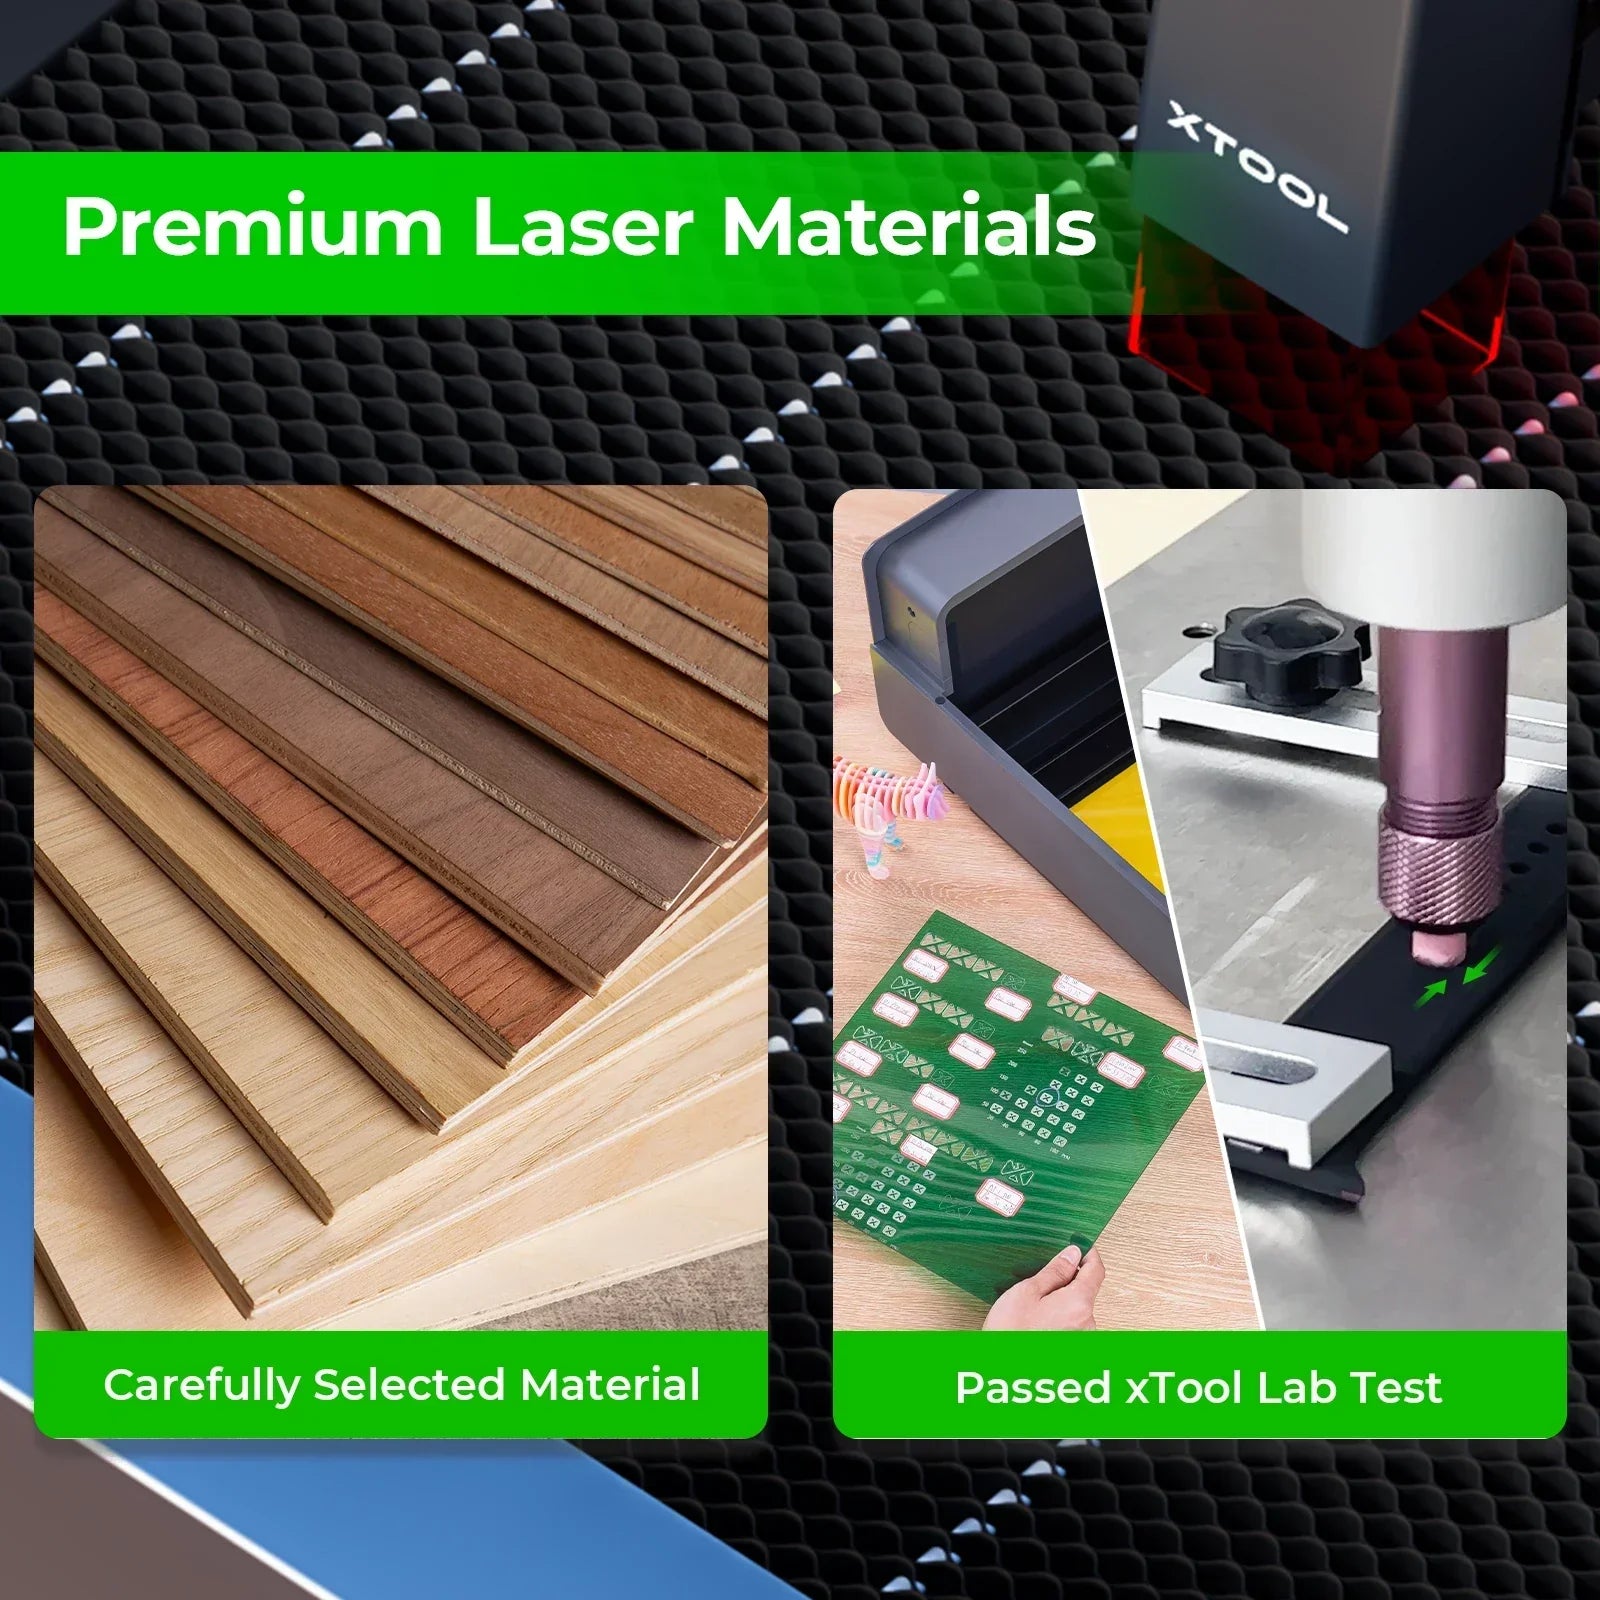 Kit Ultime de Matériaux pour Laser (159 pièces)